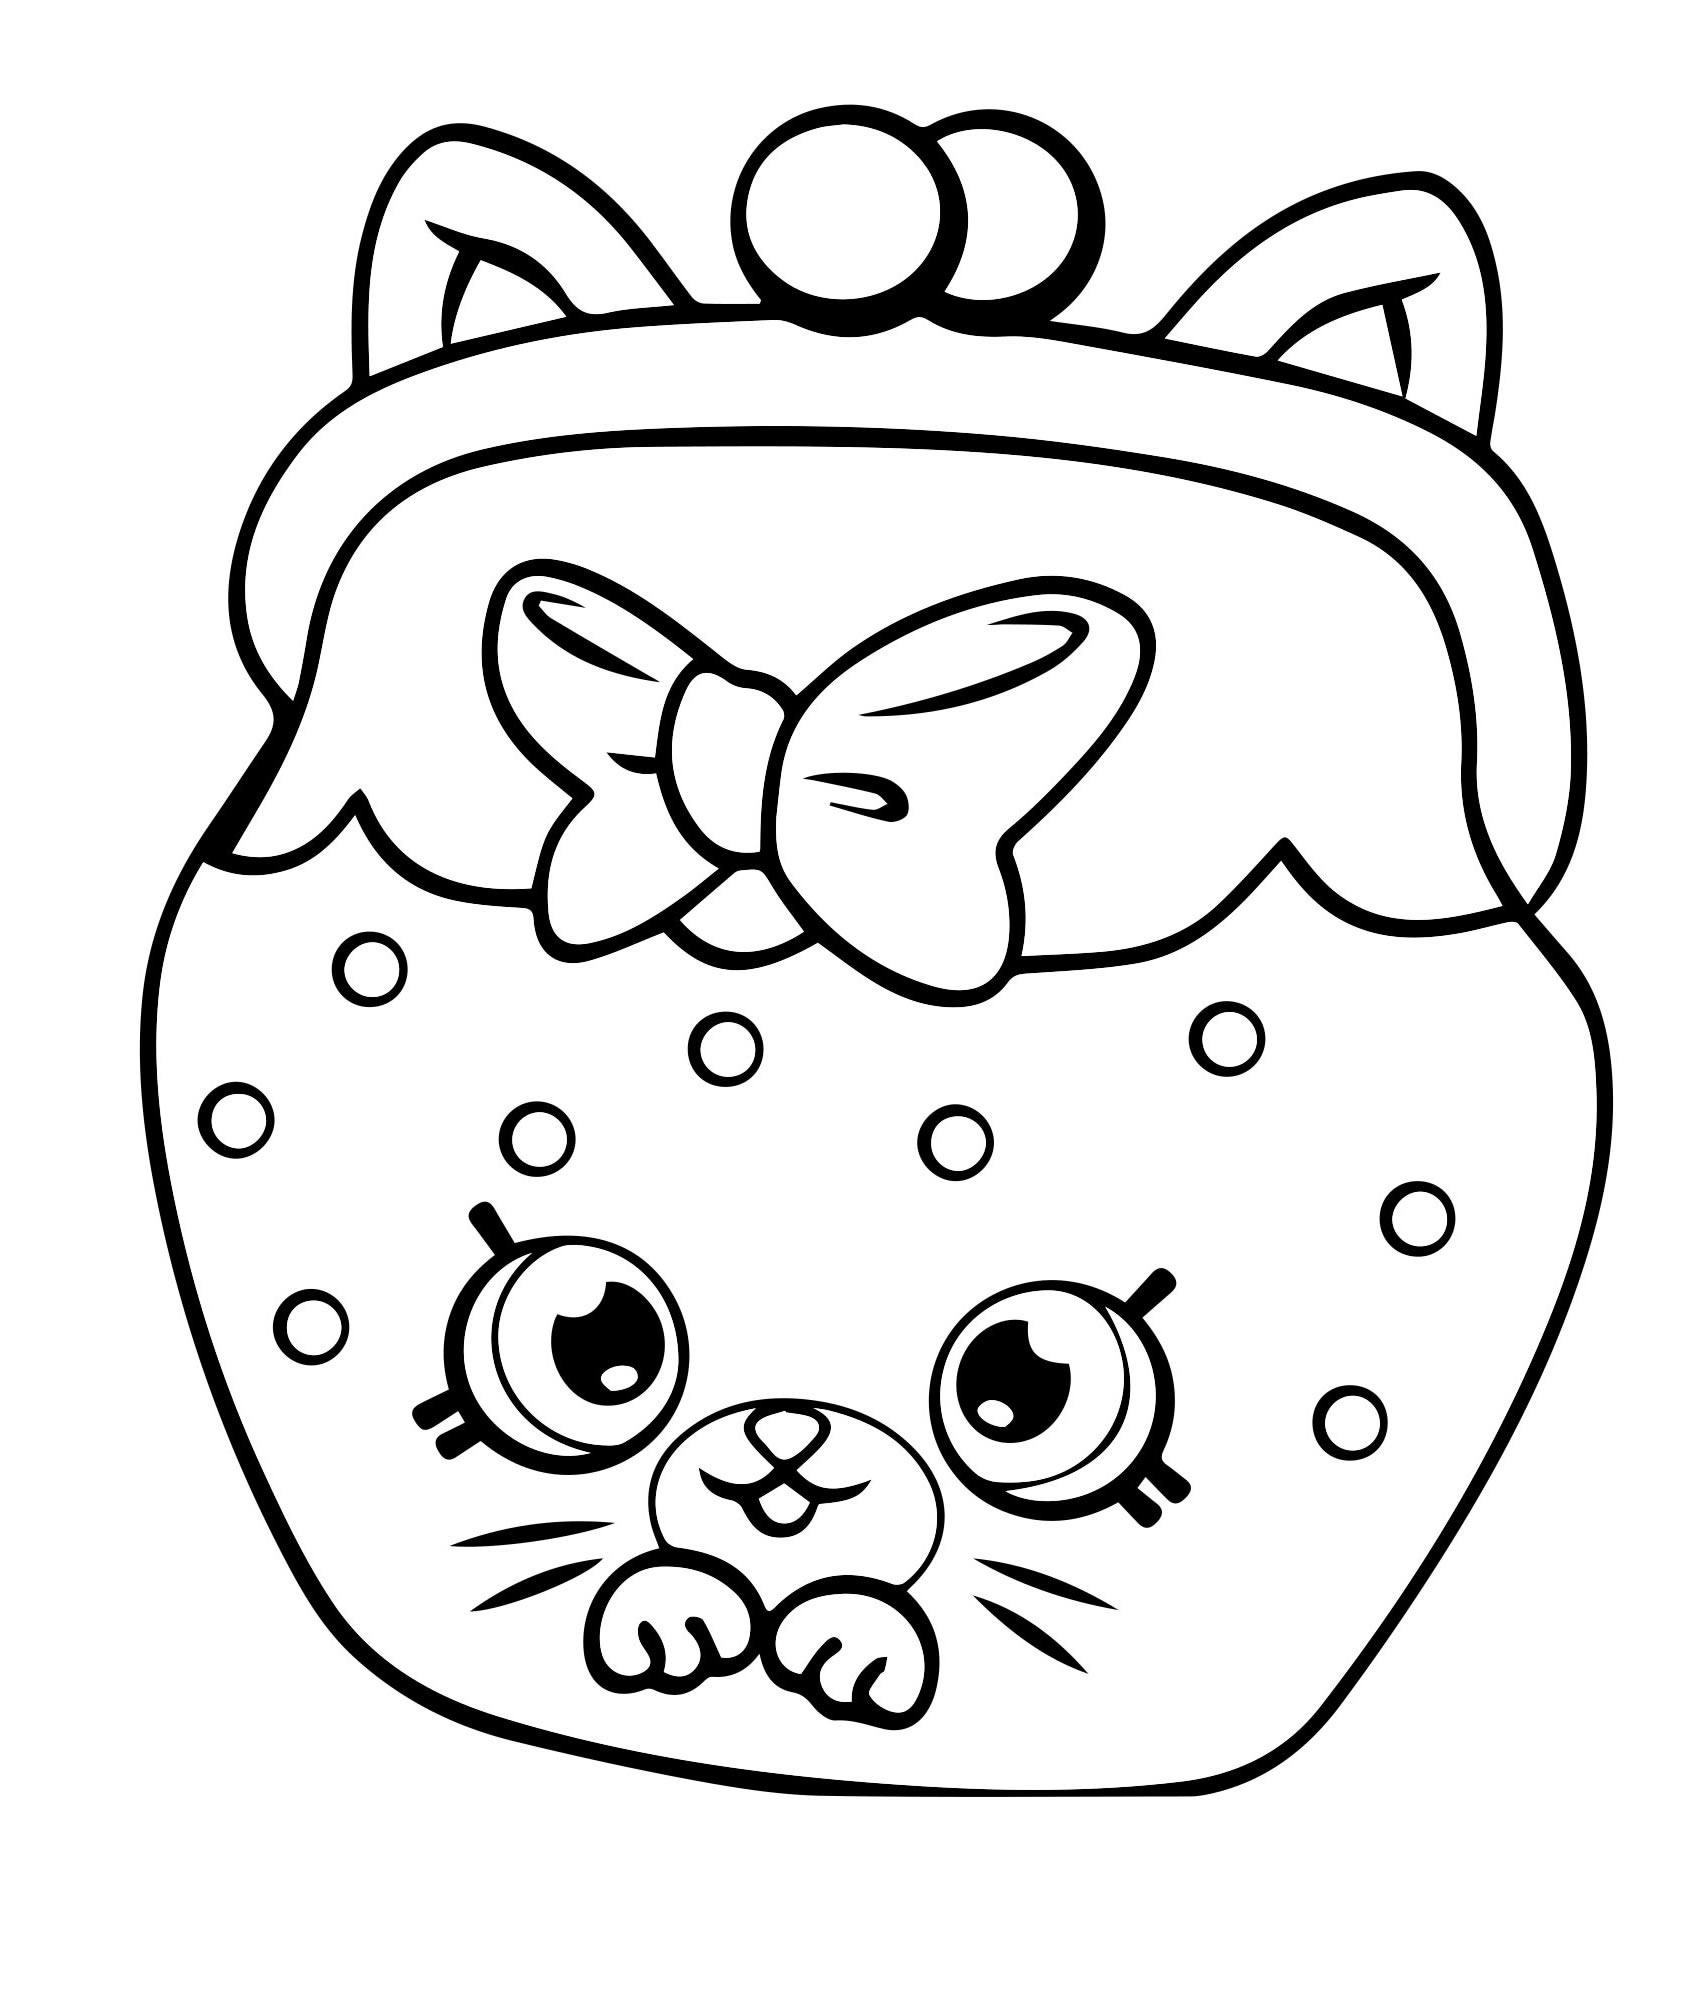 Котик шопкинс раскраска для детей